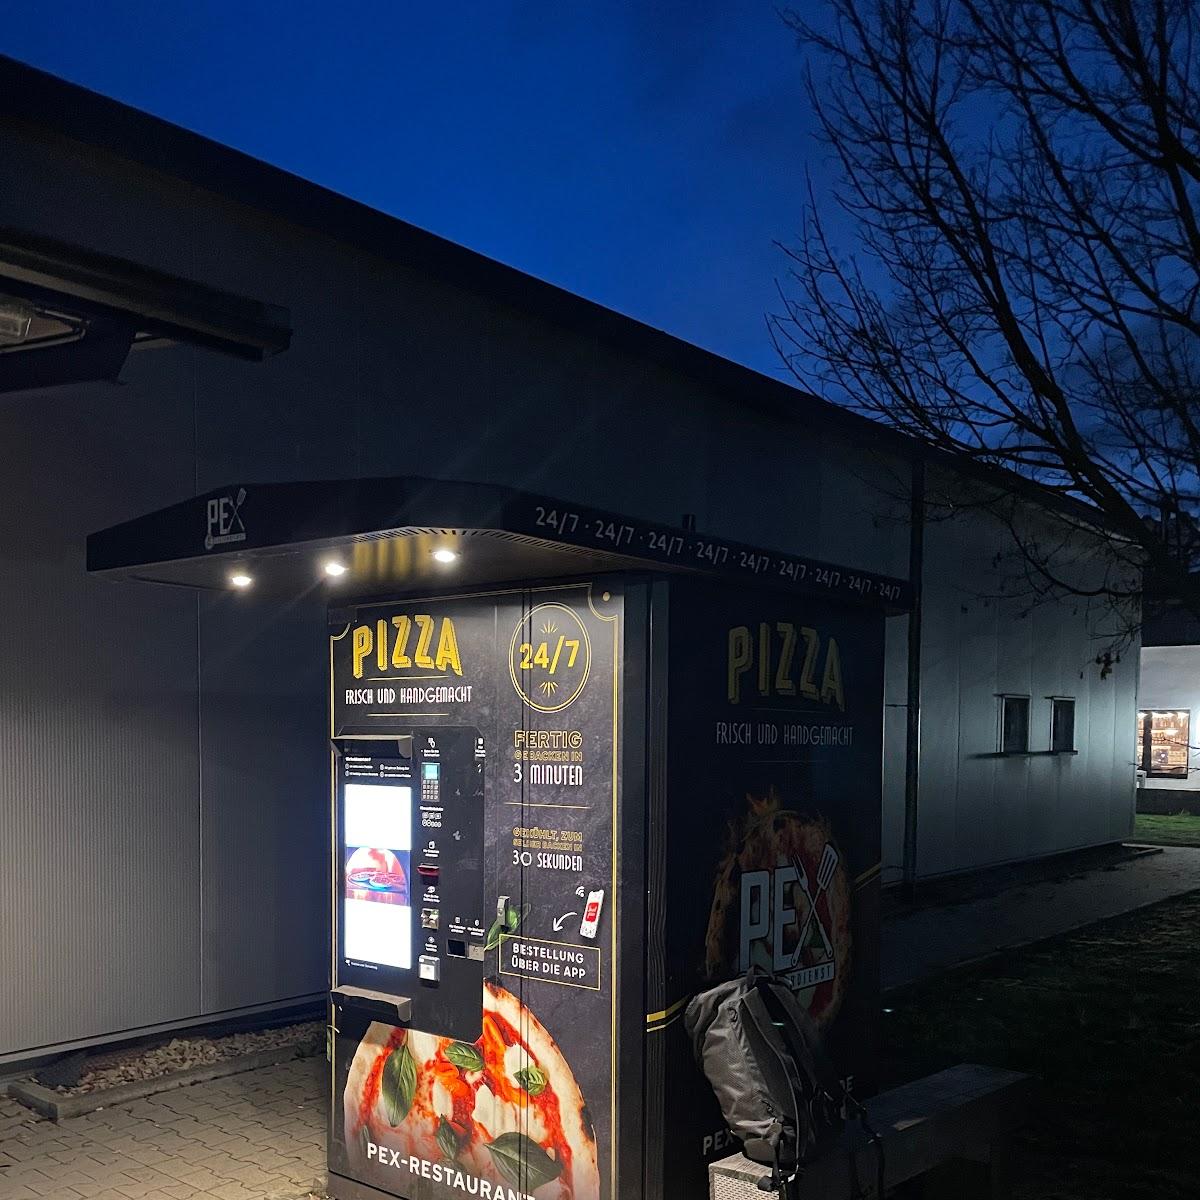 Restaurant "Pex Pizzaautomat" in Müllheim im Markgräflerland